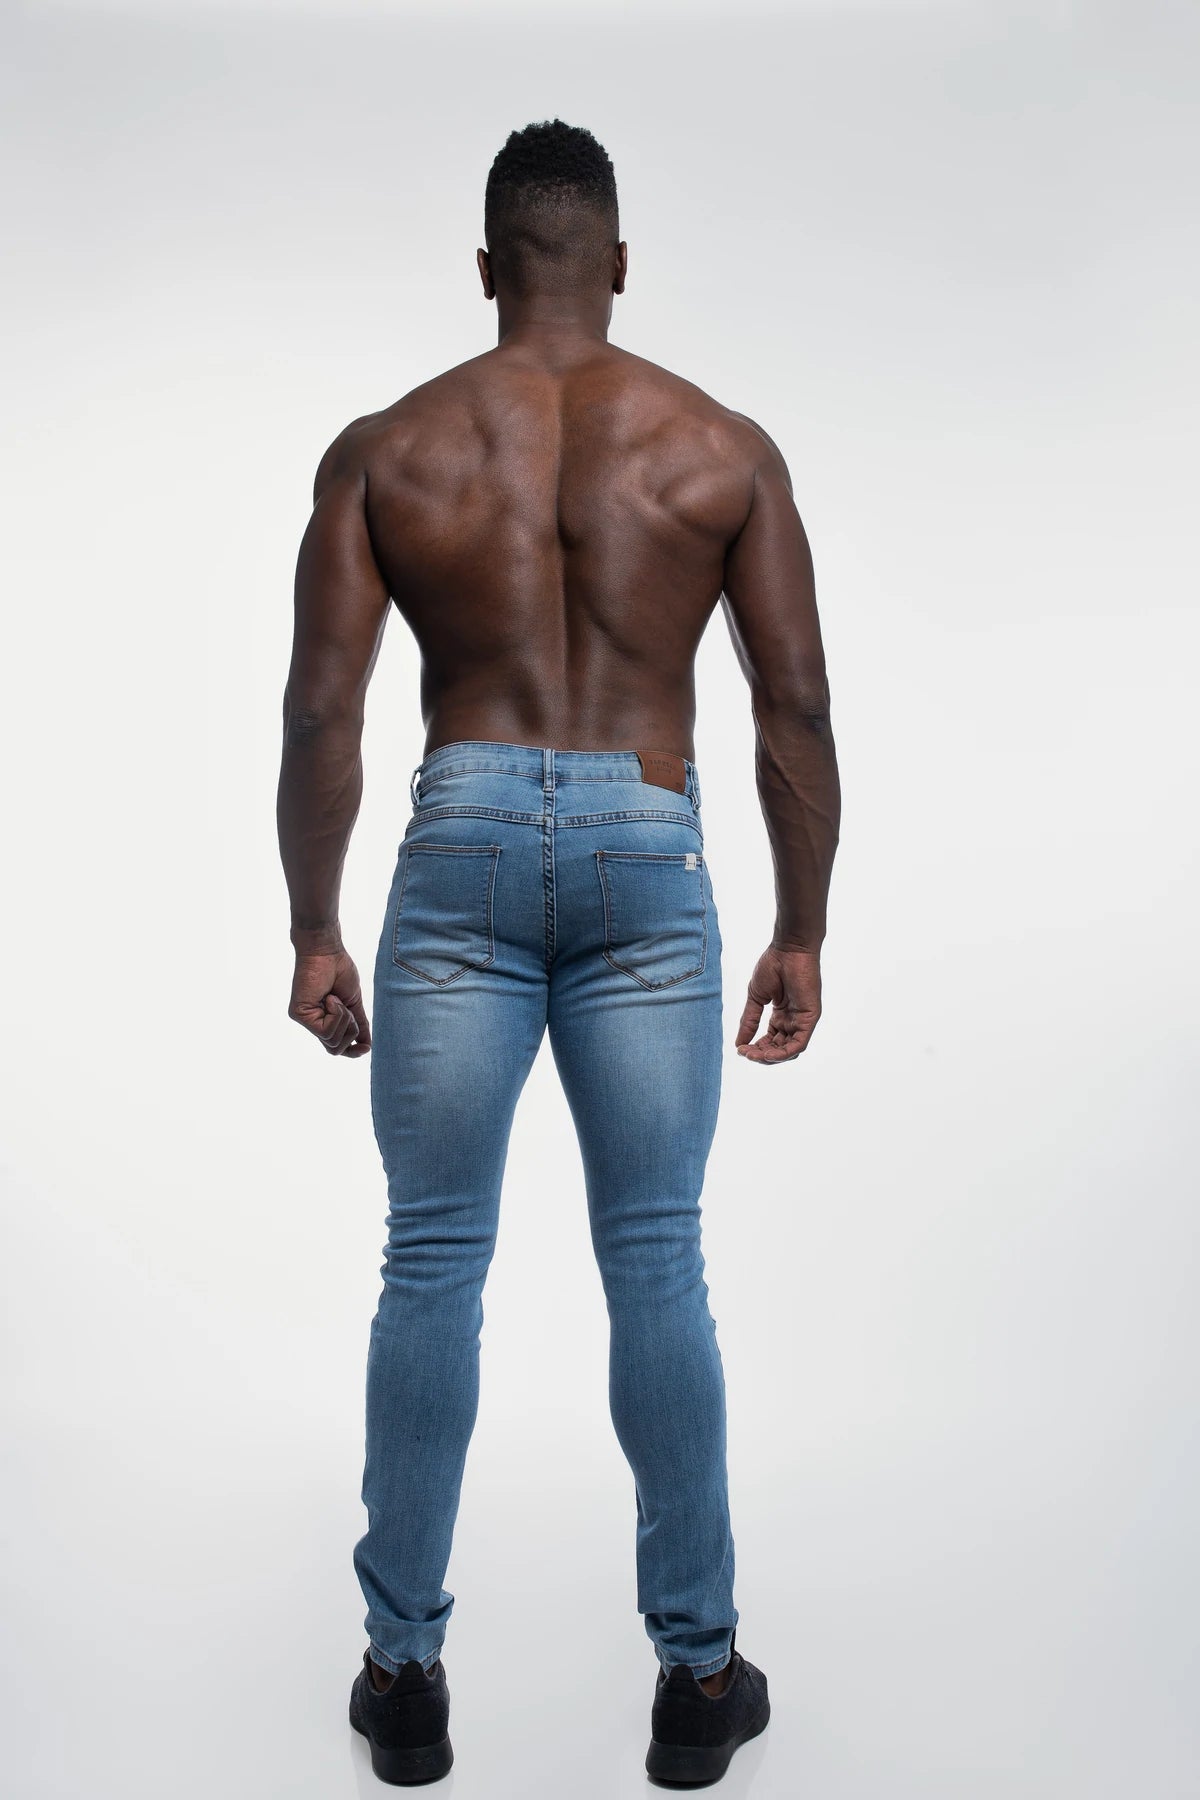 Barbell Apparel Men's Slim Athletic Fit Jeans Destroyed Dark